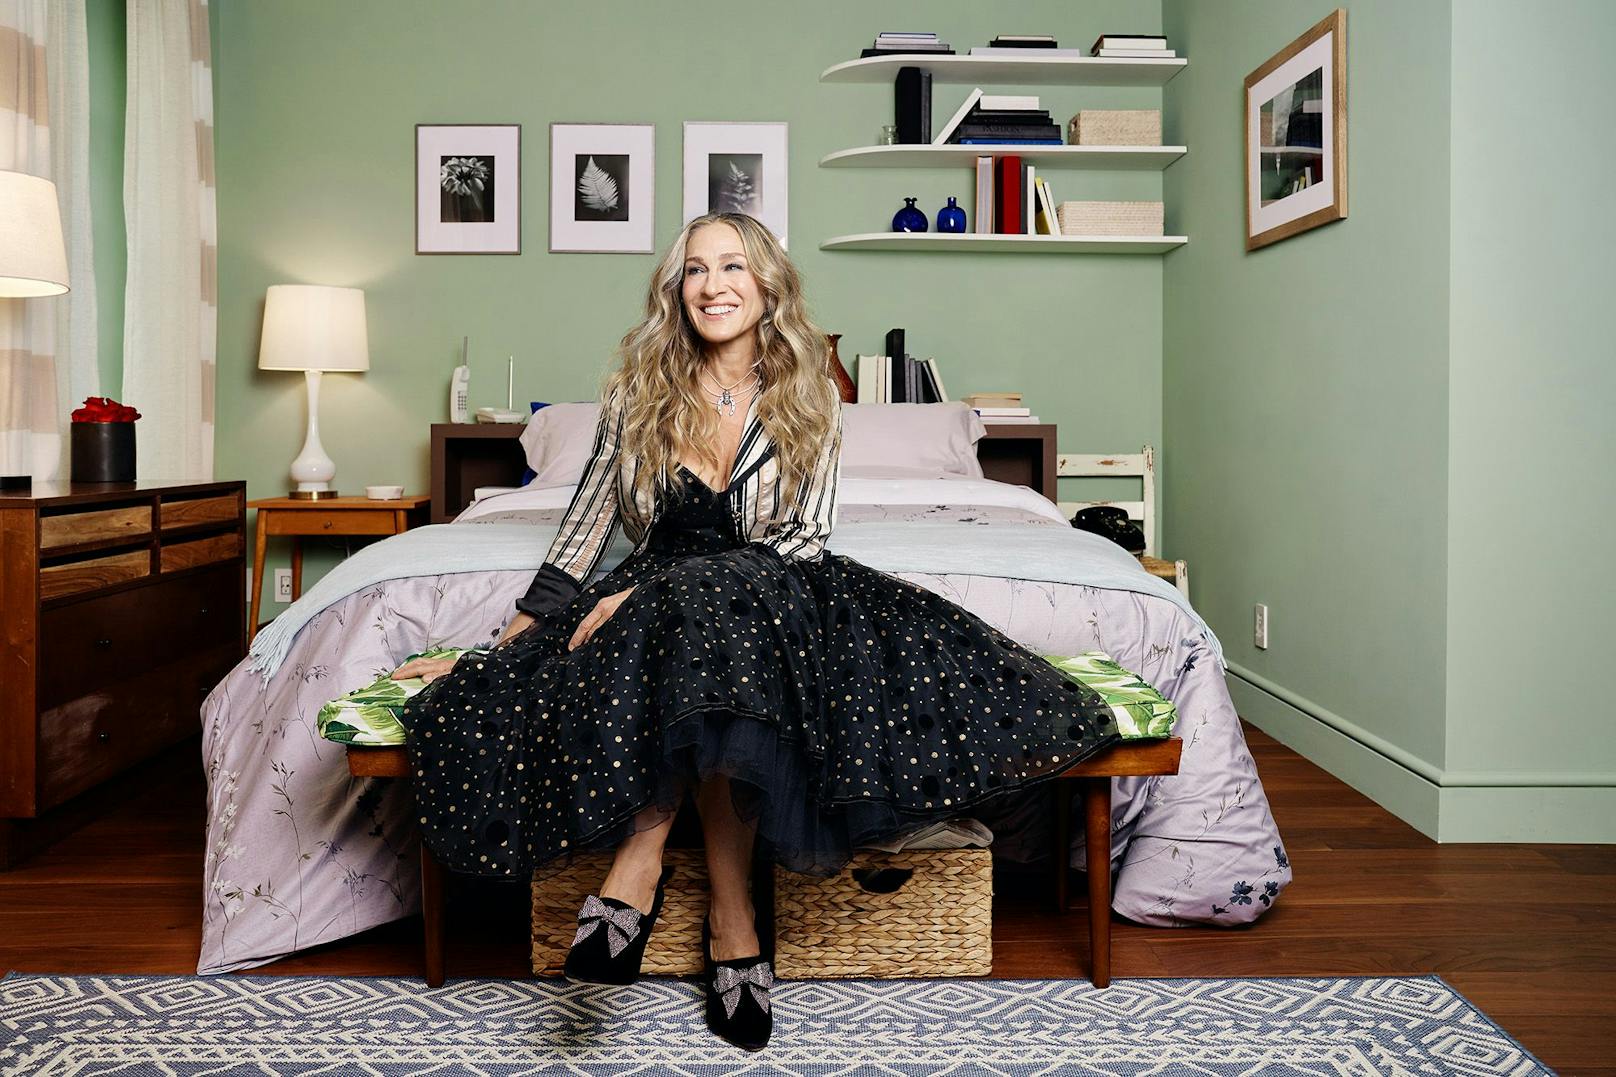 Willkommen im Apartment von Carrie Bradshaw! So oder so ähnlich wird Schauspielerin Sarah Jessica Parker die beiden Airbnb-Gäste virtuell begrüßen.